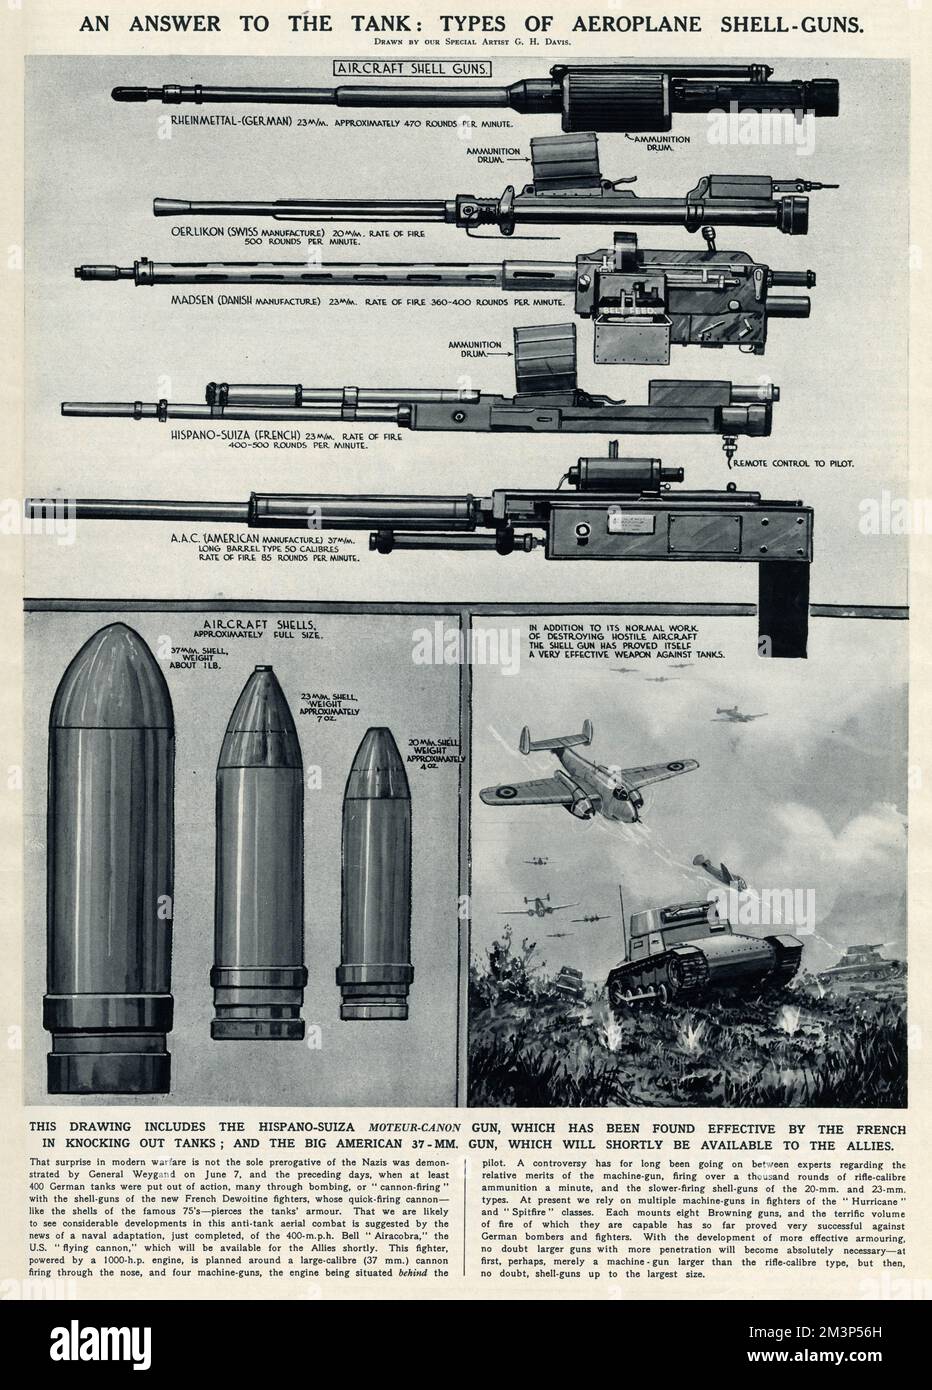 Eine Antwort auf den Panzer im Zweiten Weltkrieg: Arten von Patronengewehren. Dazu gehören die Hispano-Suiza-Moteur-Kanon-Waffe, die die Franzosen als wirksam beim Zerschlagen von Panzern befunden haben, und die große amerikanische 37mm-Waffe, die den Alliierten bald zur Verfügung stehen wird. Datum: 1940 Stockfoto